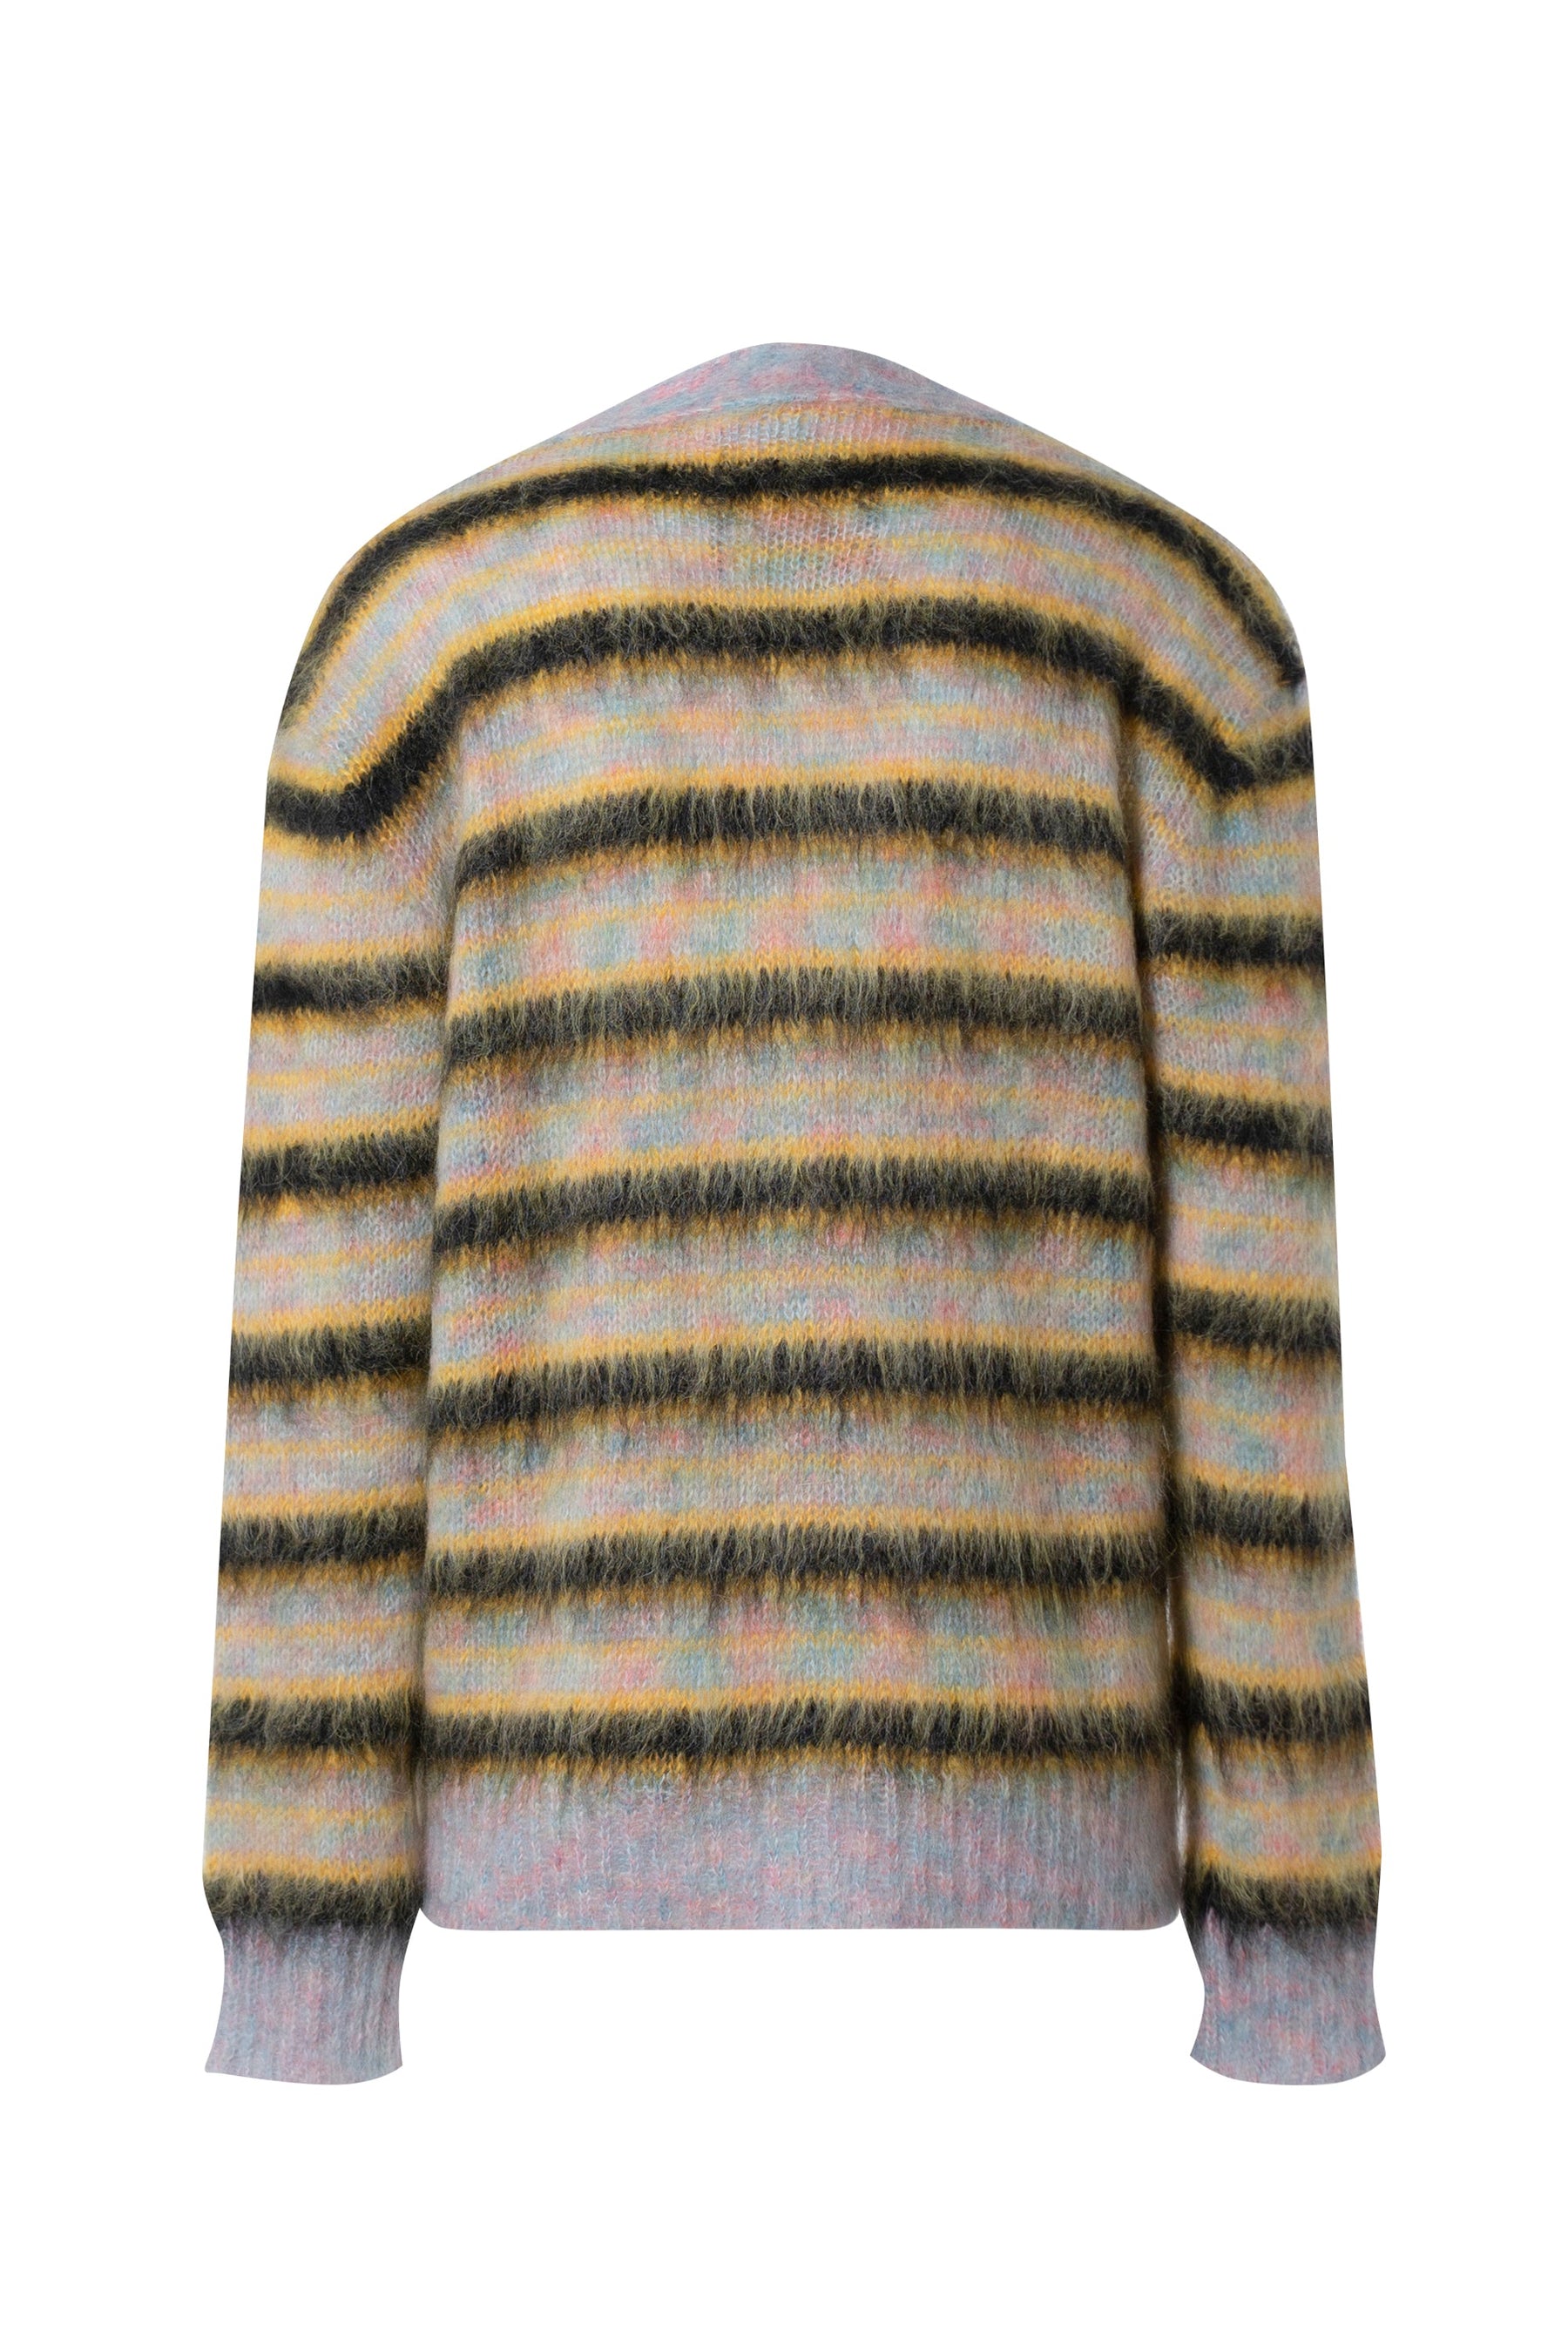 MARNI striped sweater